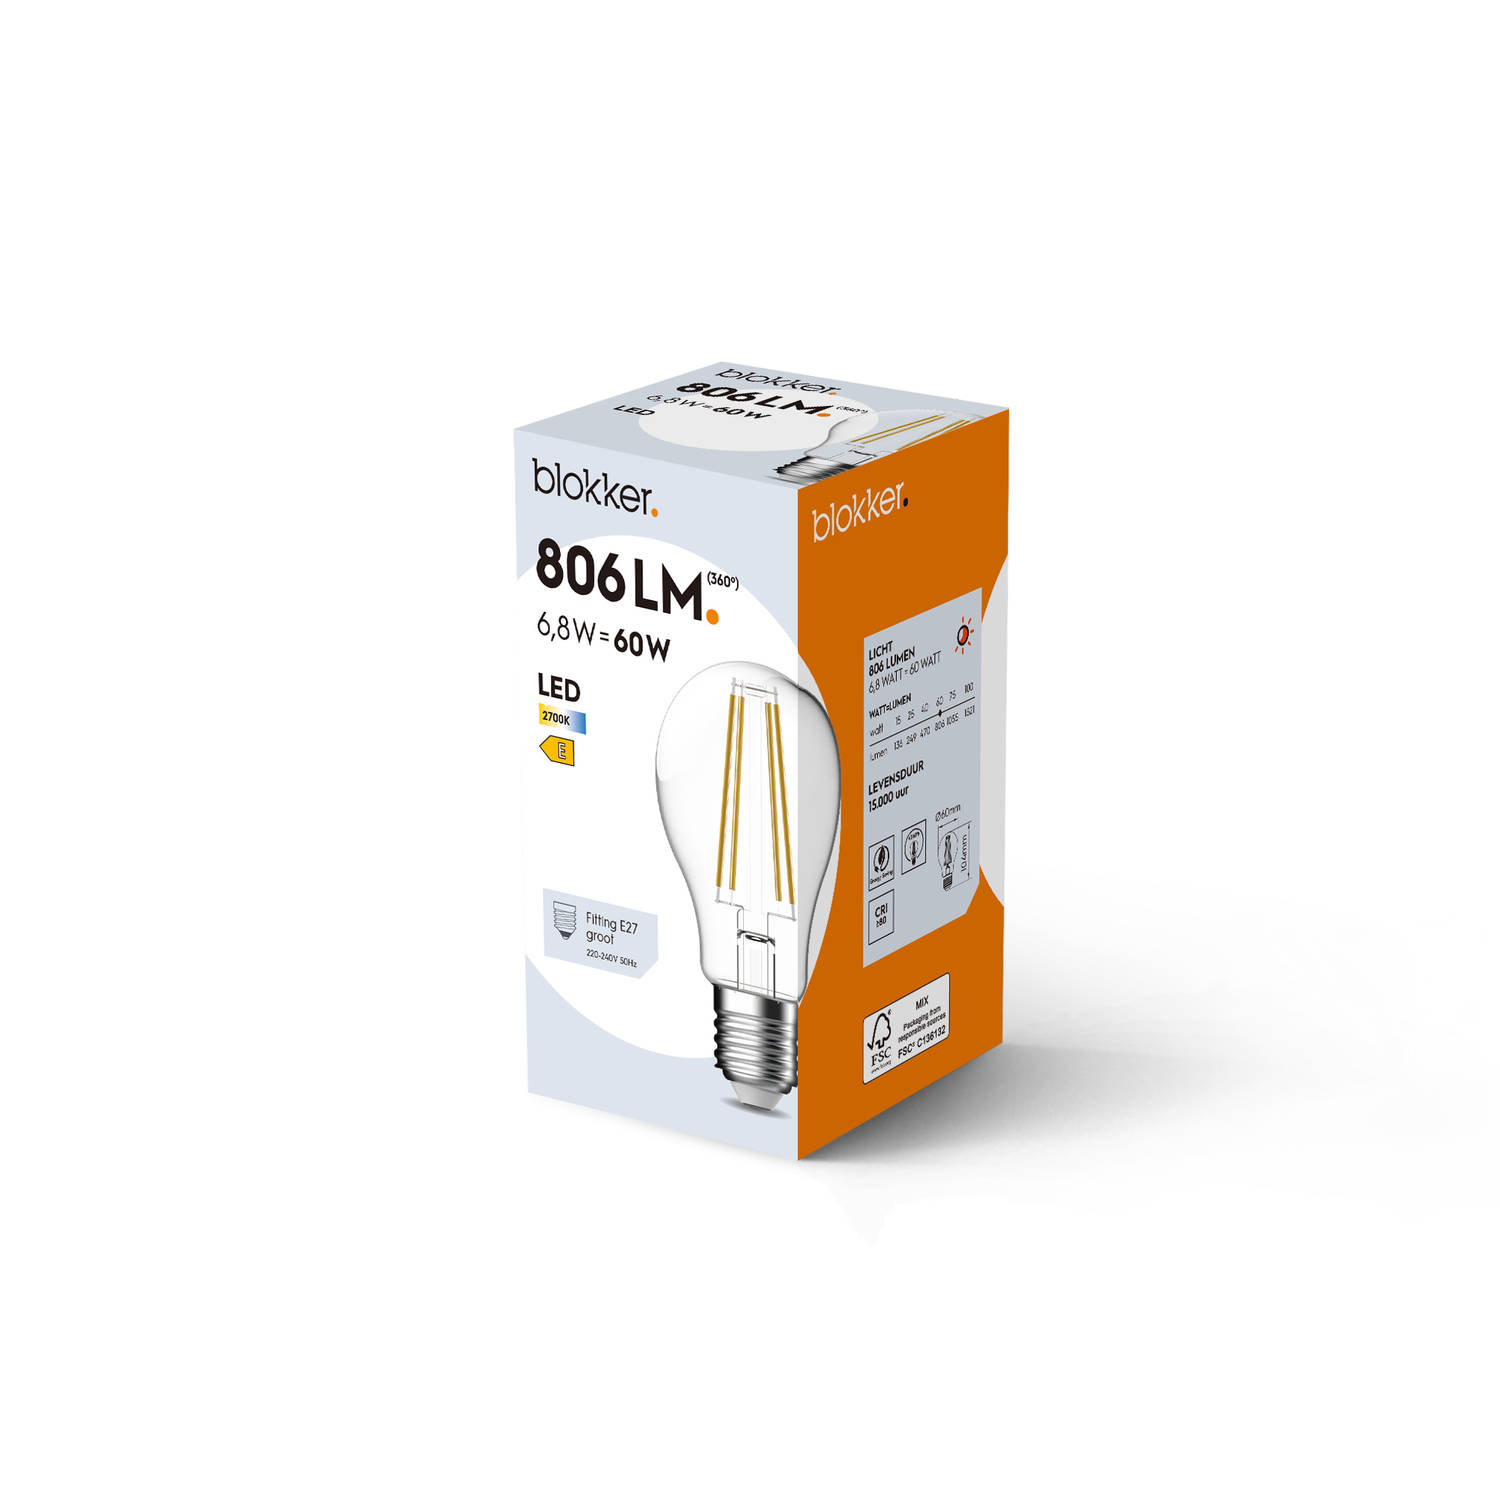 jukbeen vasthouden token Blokker LED Bulb A60 60We27 Helder | Blokker